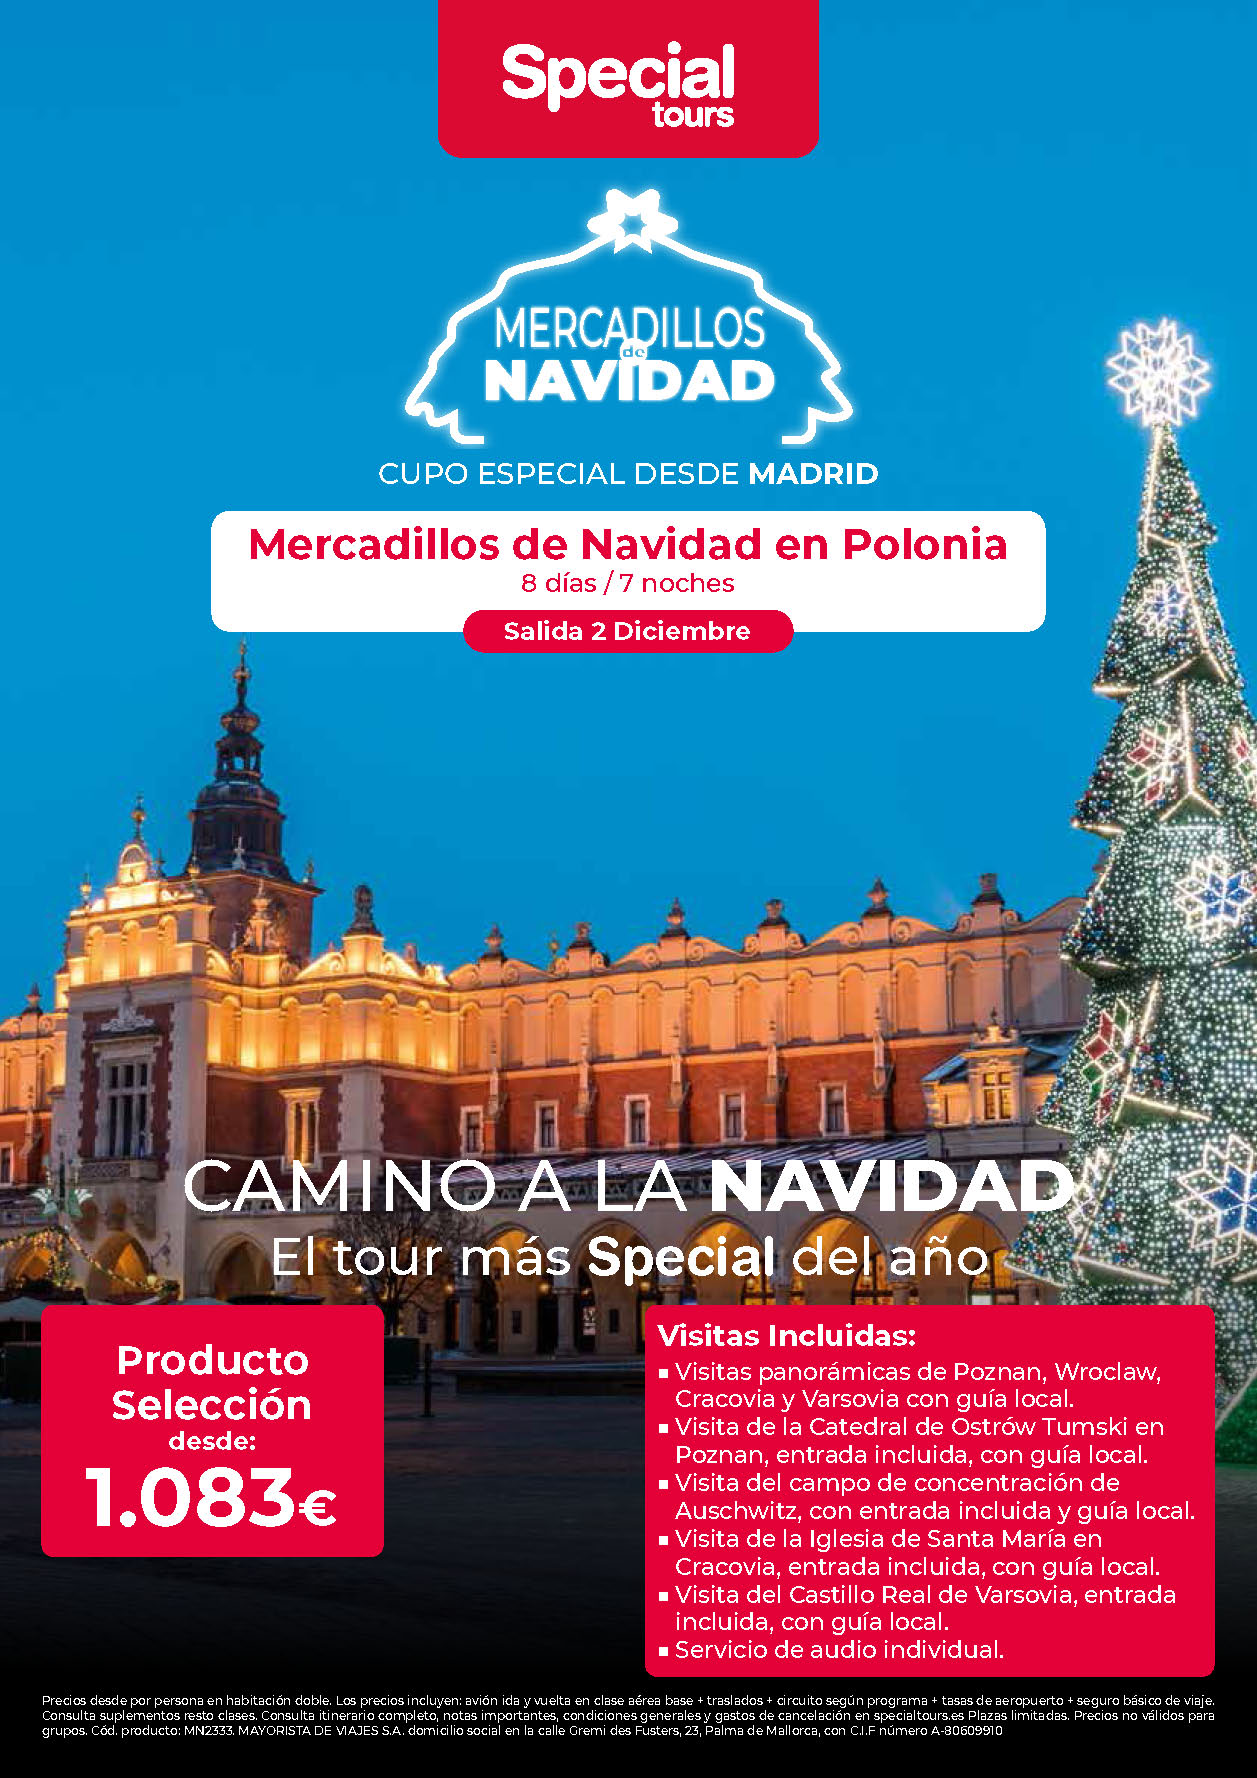 Oferta Special Tours Puente de Diciembre Mercadillos de Navidad en Polonia 8 dias salida 2 Diciembre vuelo directo desde Madrid